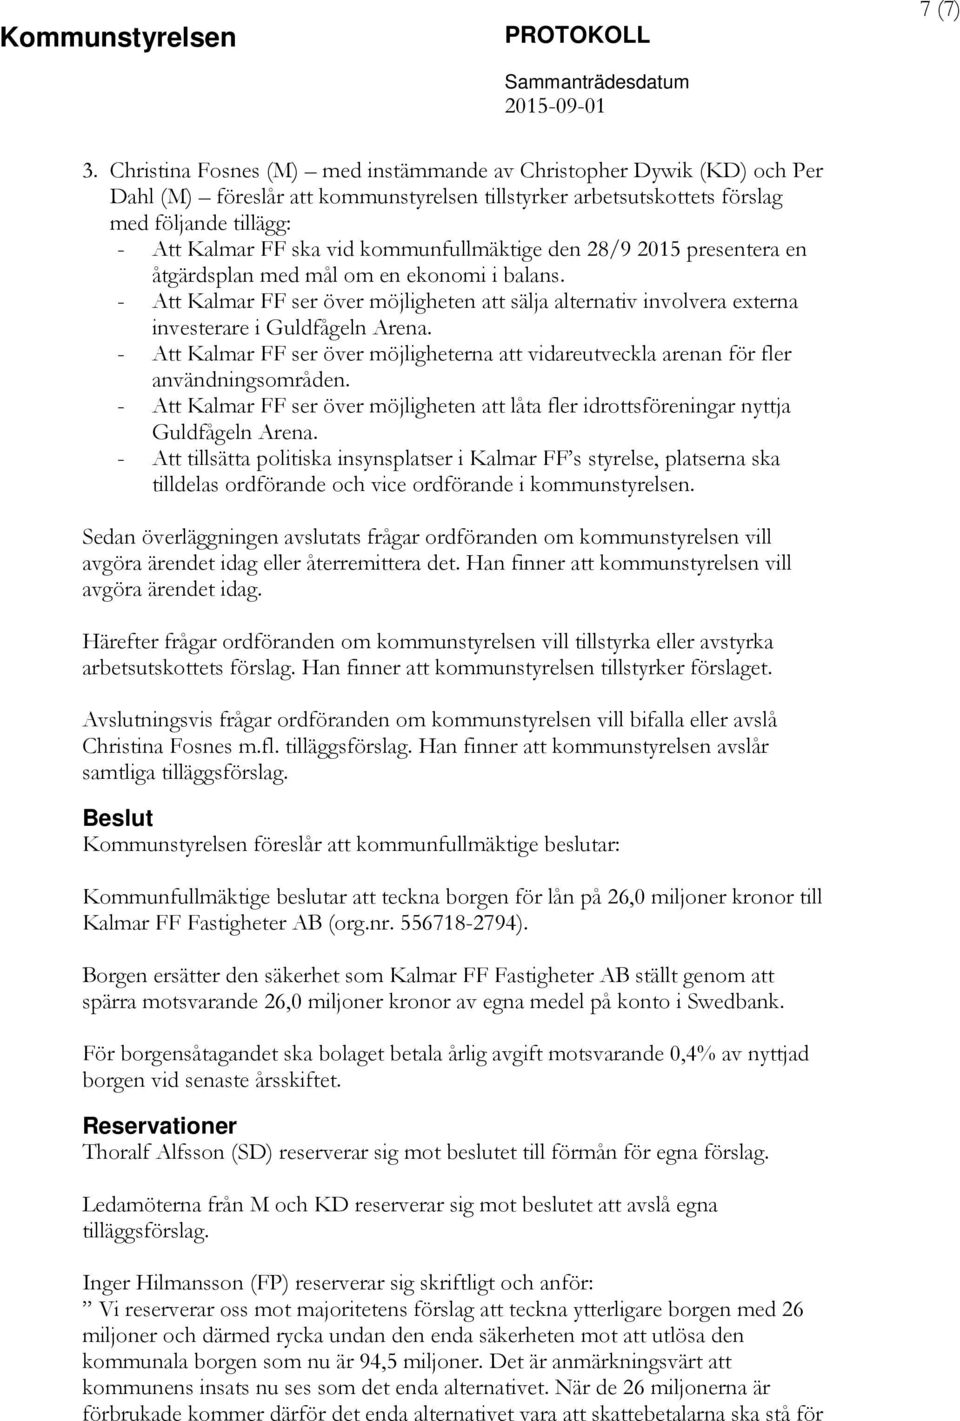 kommunfullmäktige den 28/9 2015 presentera en åtgärdsplan med mål om en ekonomi i balans. - Att Kalmar FF ser över möjligheten att sälja alternativ involvera externa investerare i Guldfågeln Arena.